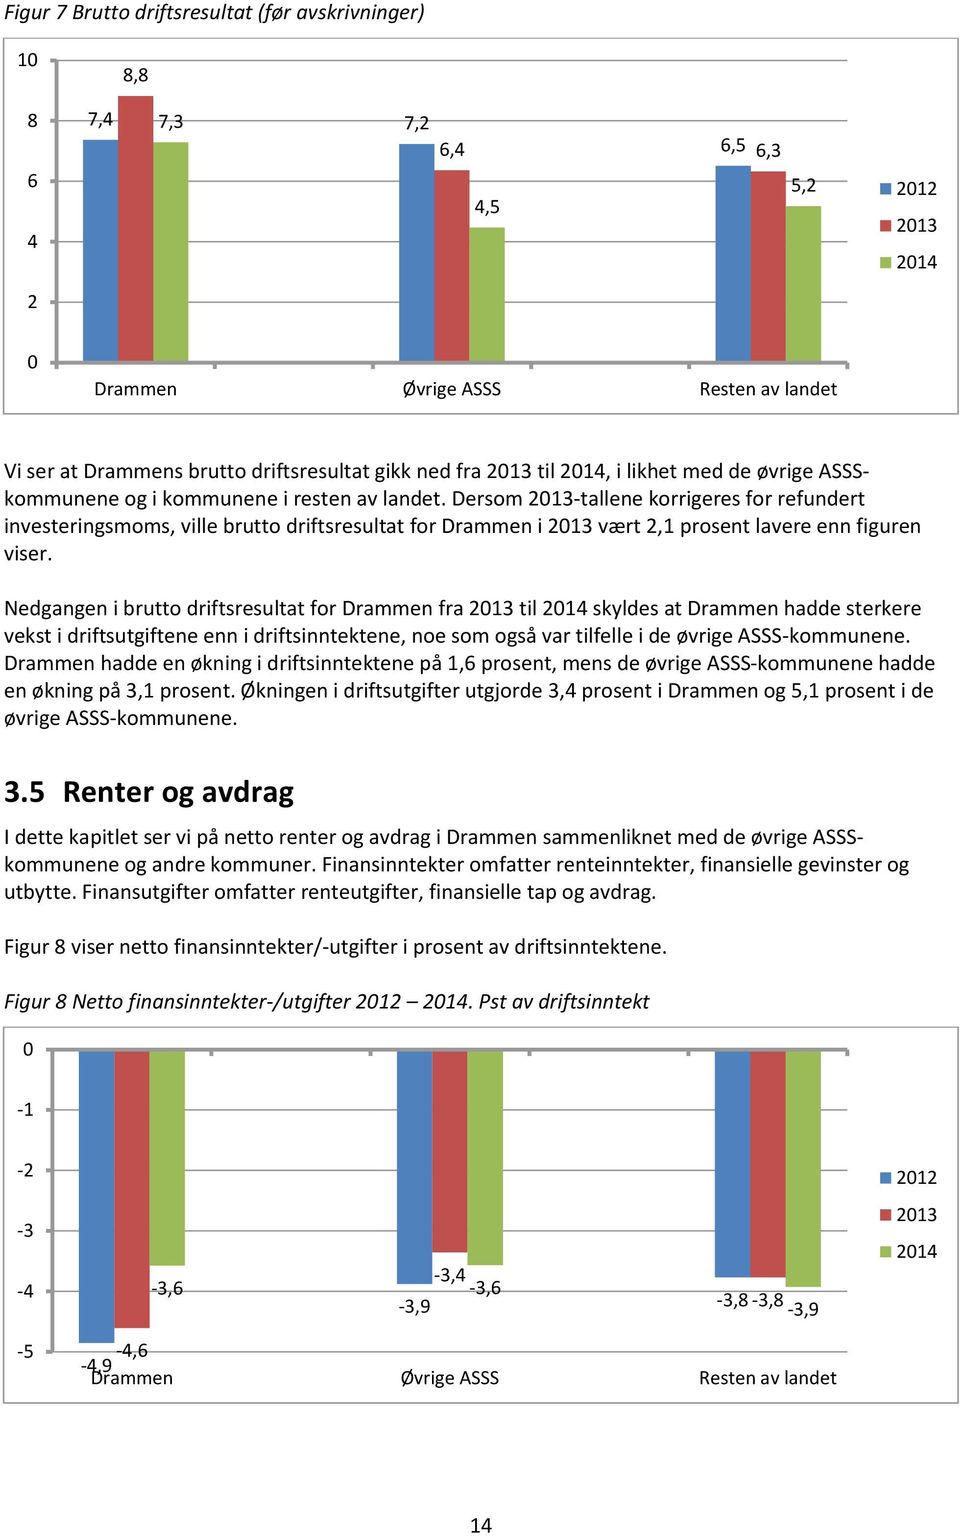 Dersom 2013-tallene korrigeres for refundert investeringsmoms, ville brutto driftsresultat for Drammen i 2013 vært 2,1 prosent lavere enn figuren viser.